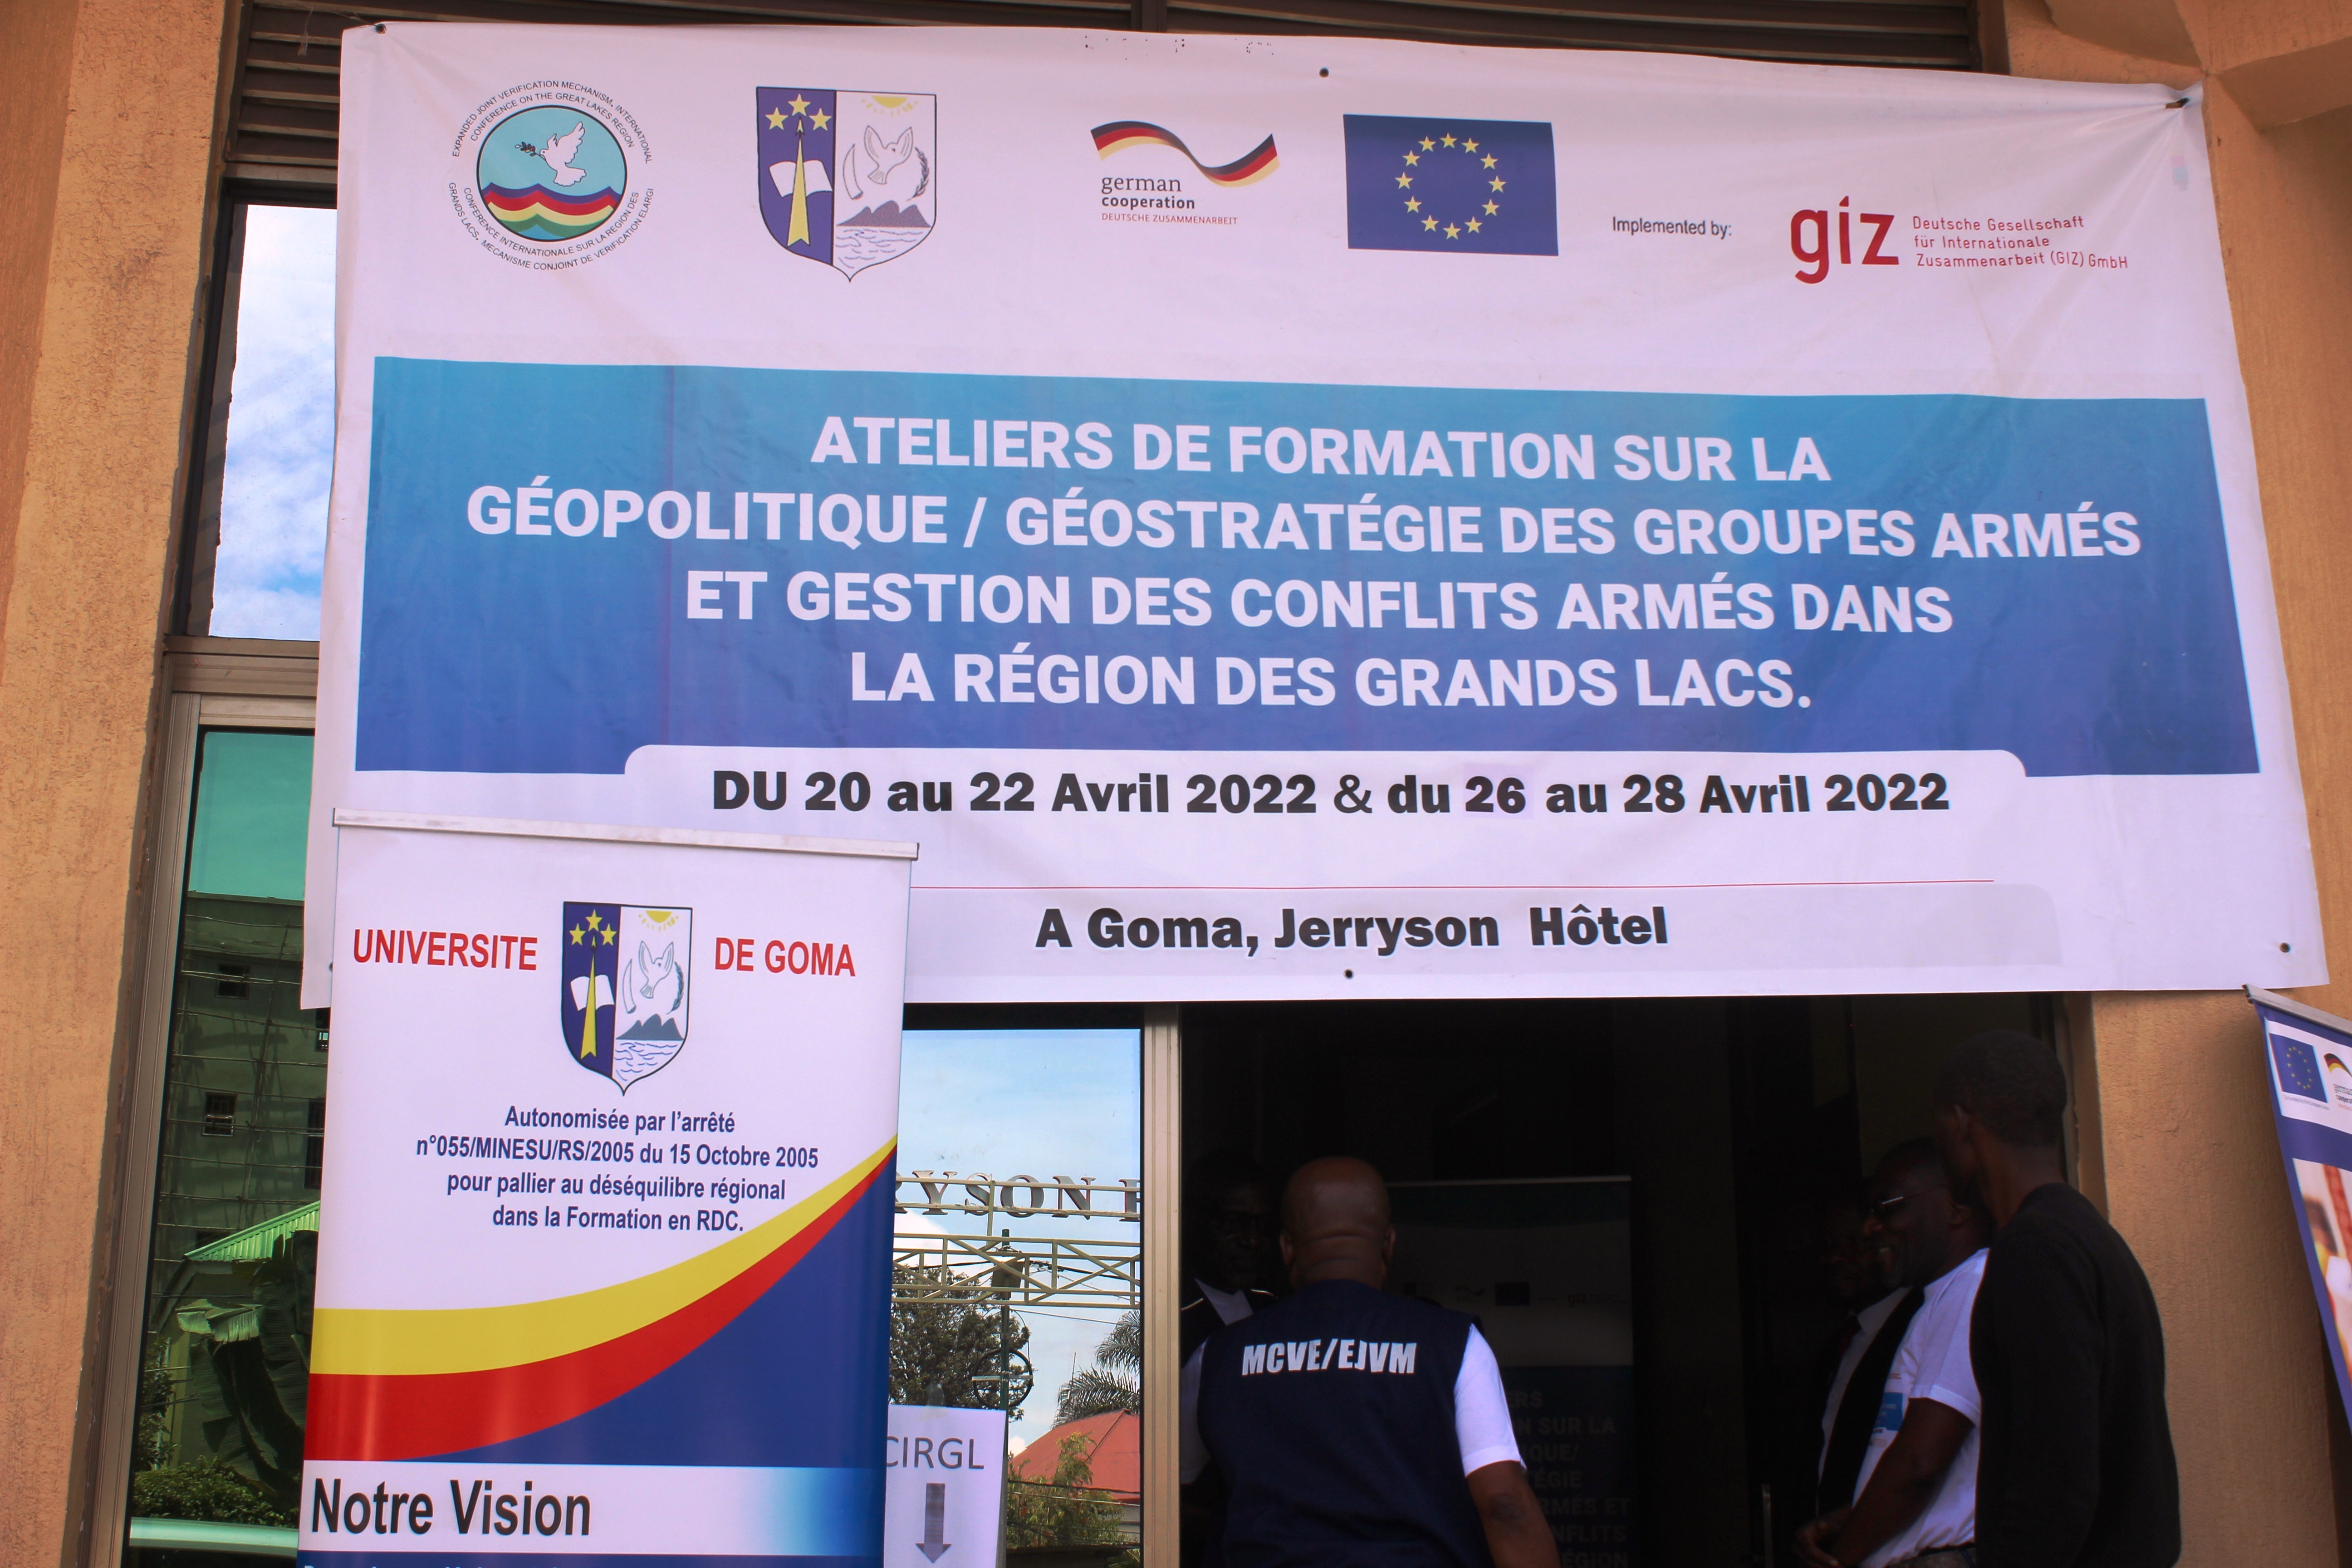 UNIGOM: Dans sa mission de service à la communauté, l'Université de Goma offre son expertise à la CIRGL